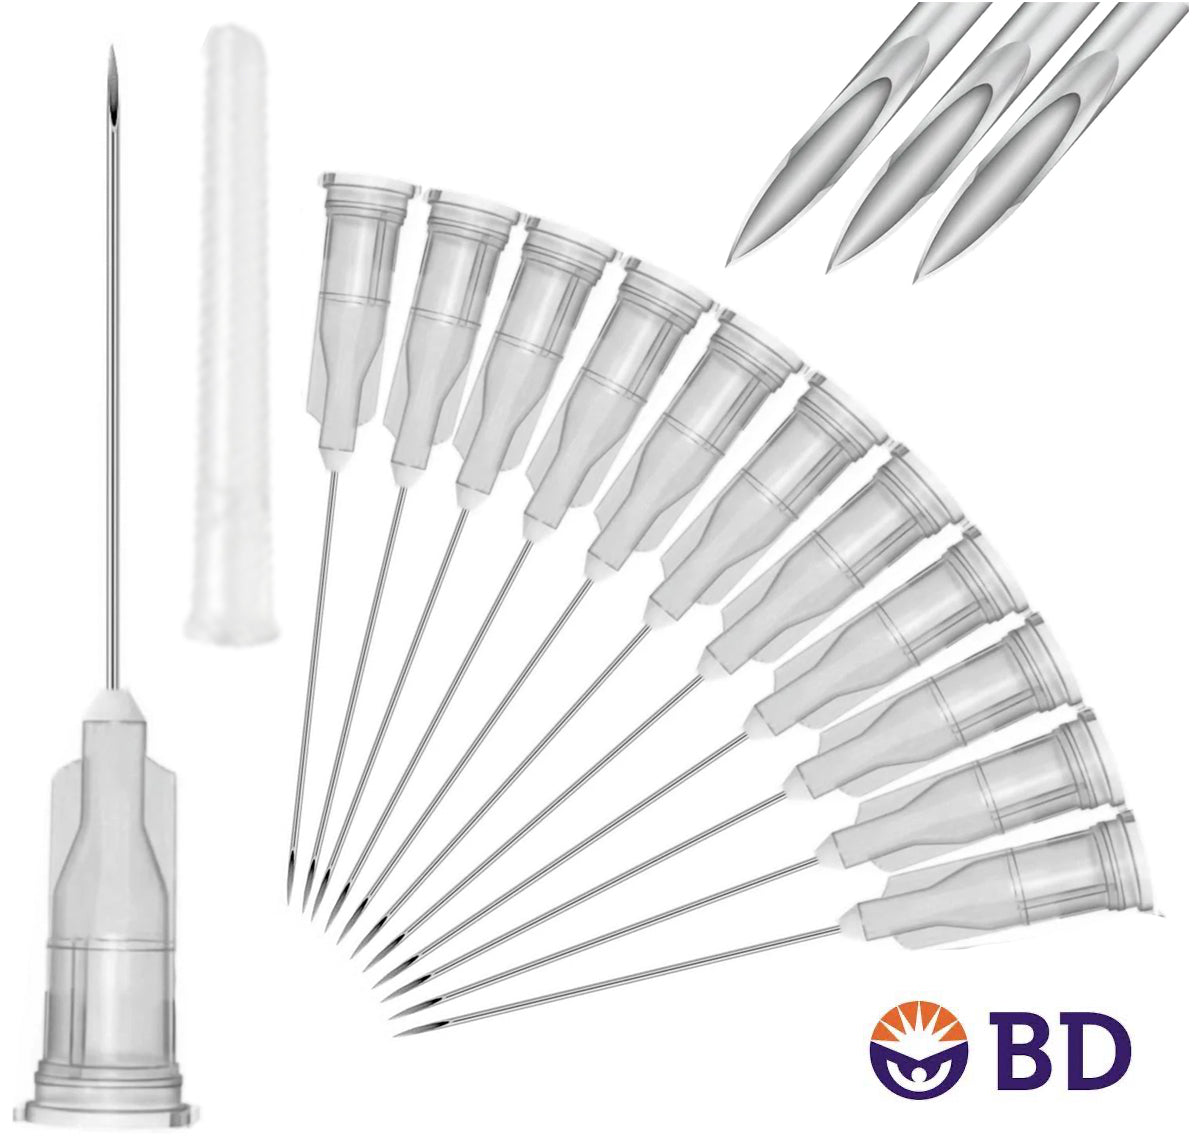 BD 22G x 1" Medical Needle (10pk)